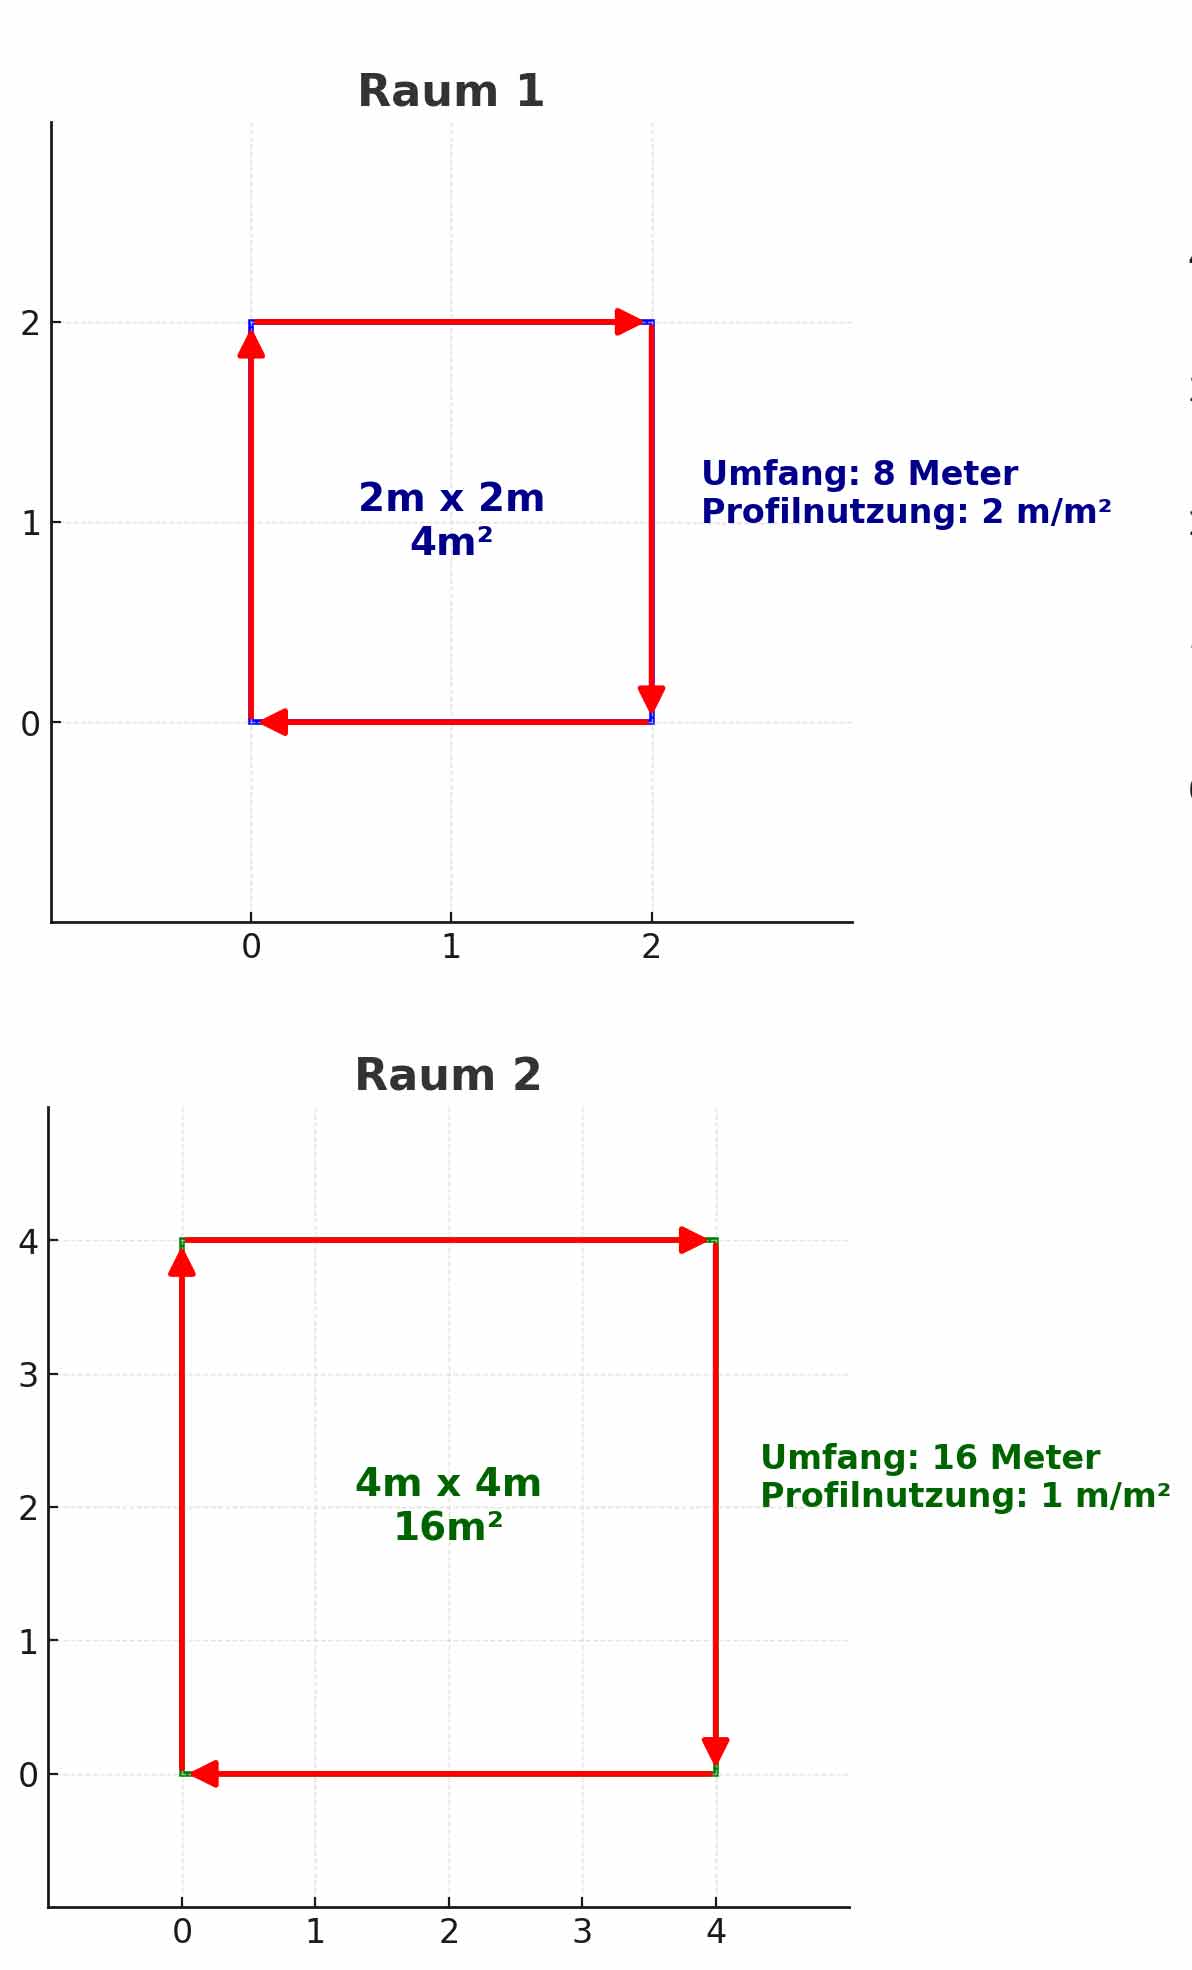 Diagramm zur Visualisierung der Profilnutzung für Spanndecken in zwei quadratischen Räumen. Der linke Raum hat eine Größe von 2m x 2m mit einer Profilnutzung von 2 m/m² und einem Umfang von 8 Metern. Der rechte Raum hat eine Größe von 4m x 4m mit einer Profilnutzung von 1 m/m² und einem Umfang von 16 Metern.